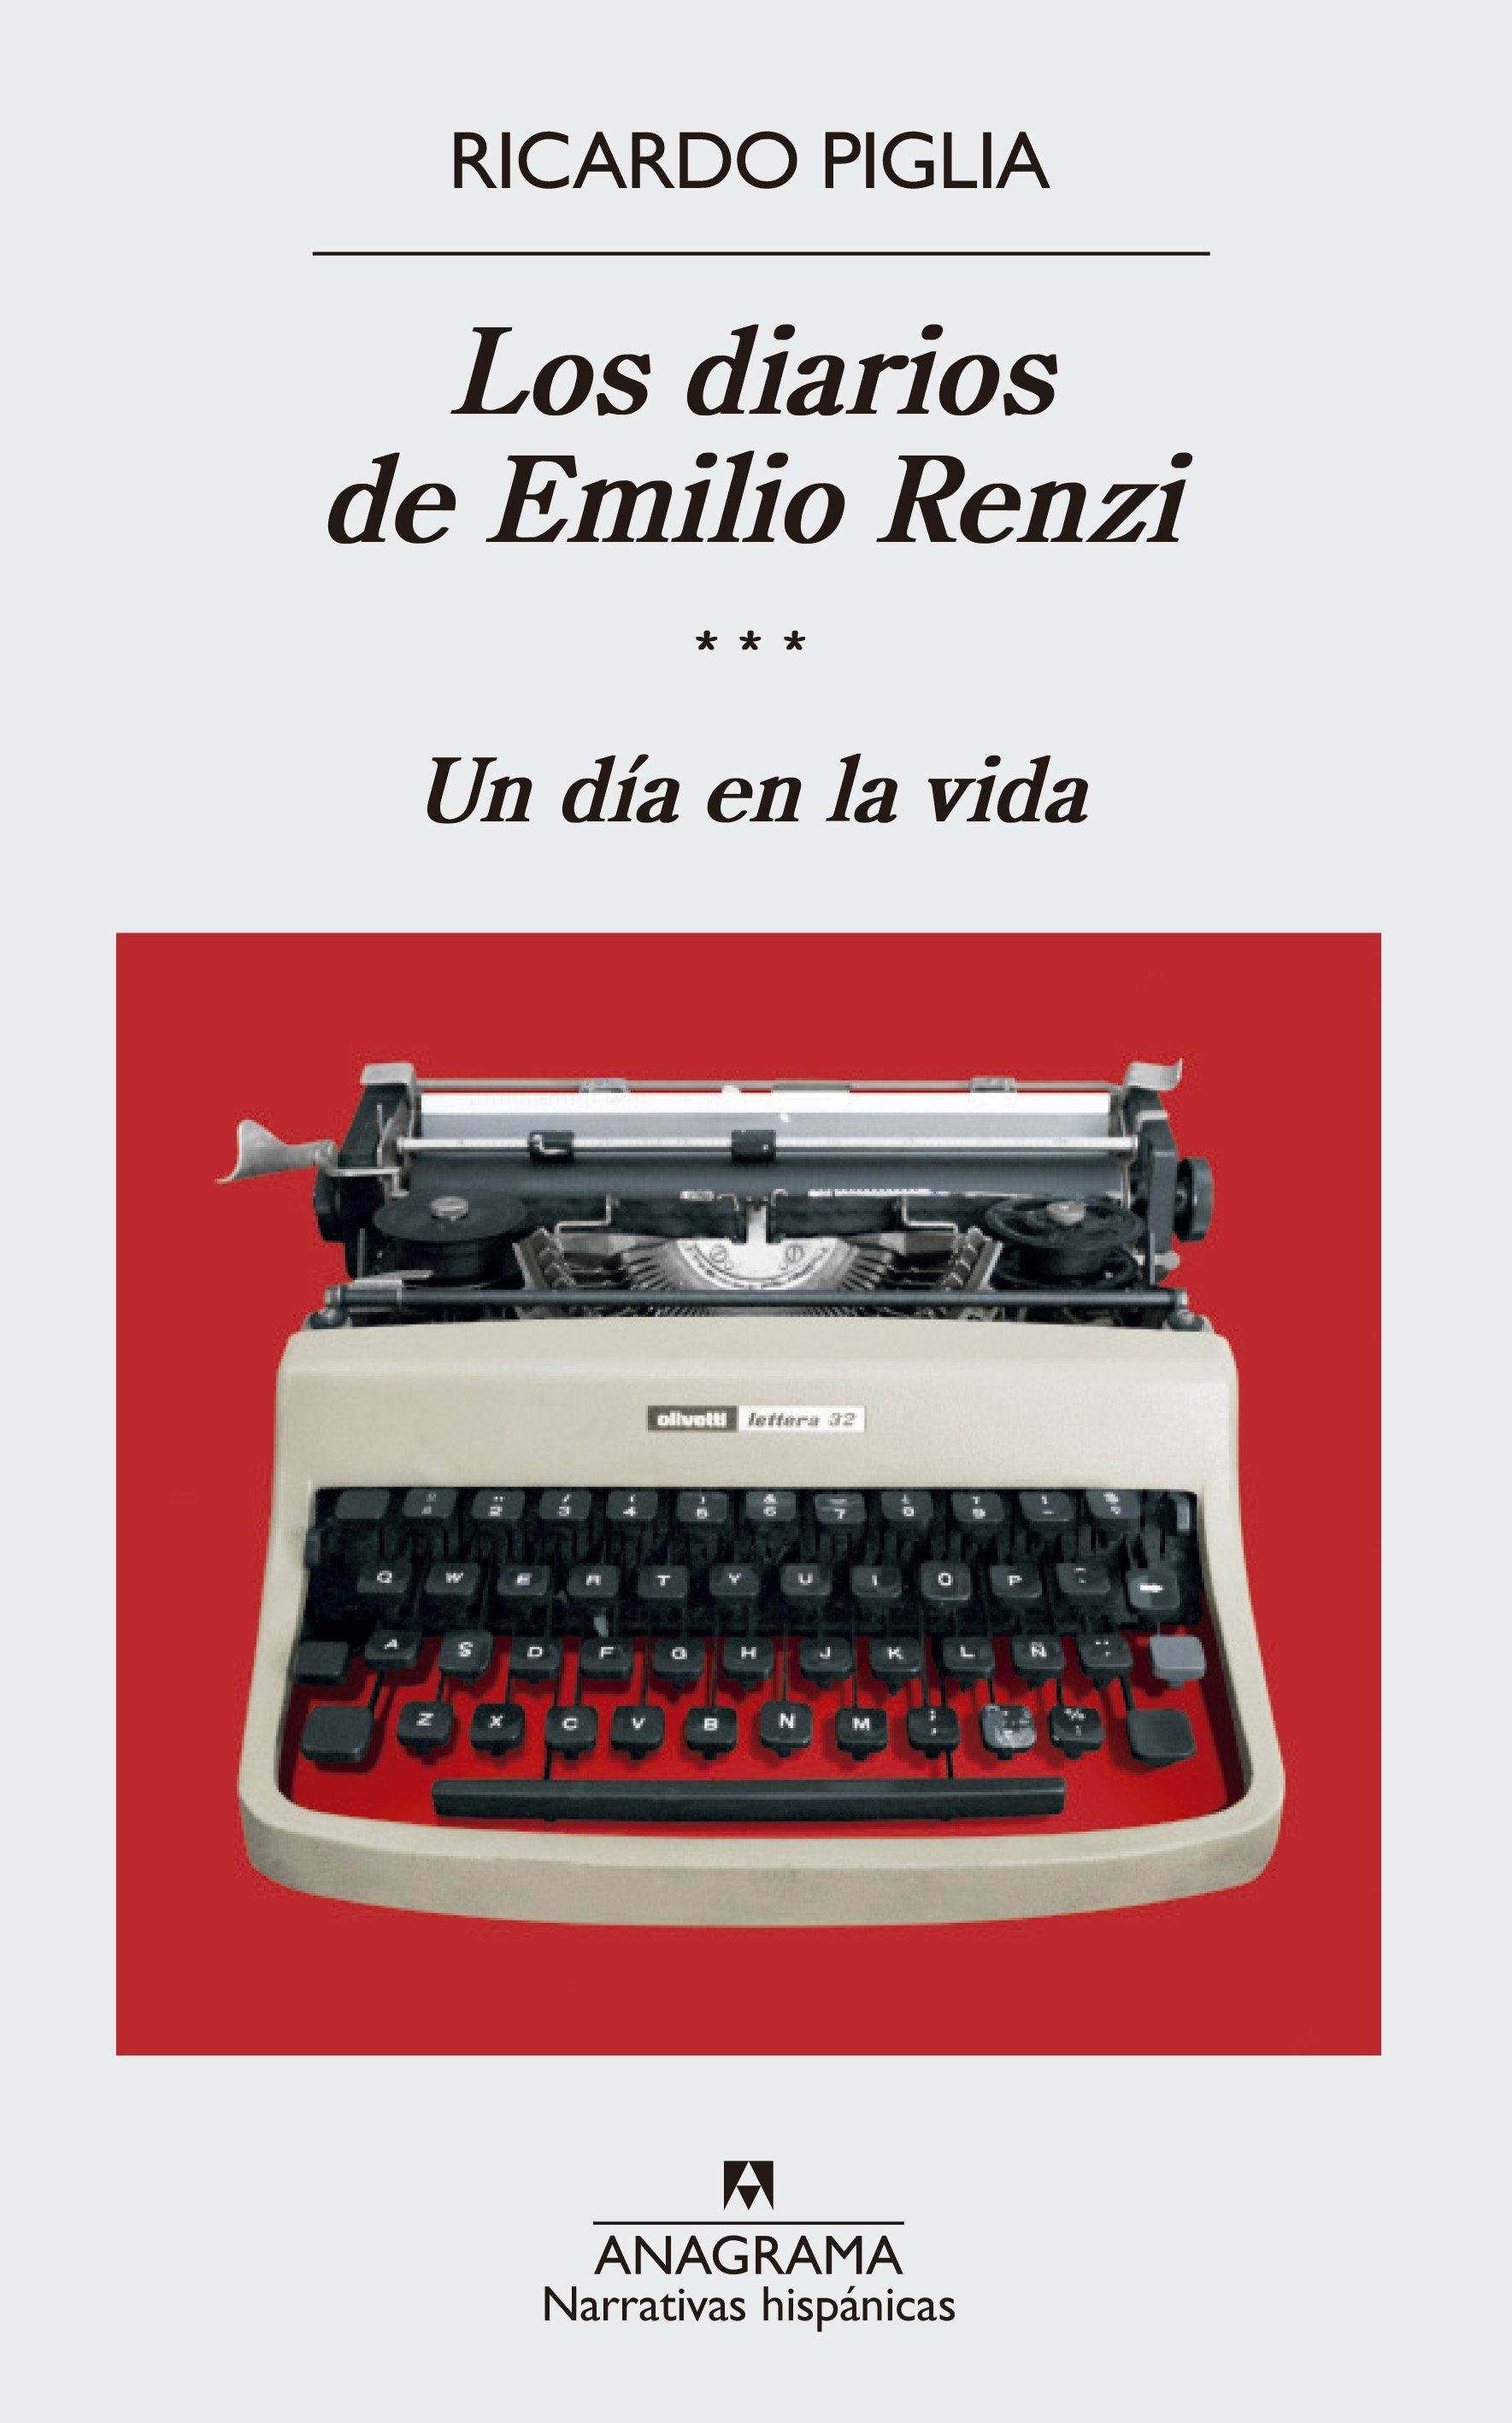 Los diarios de Emilio Renzi III "Un día en la vida"